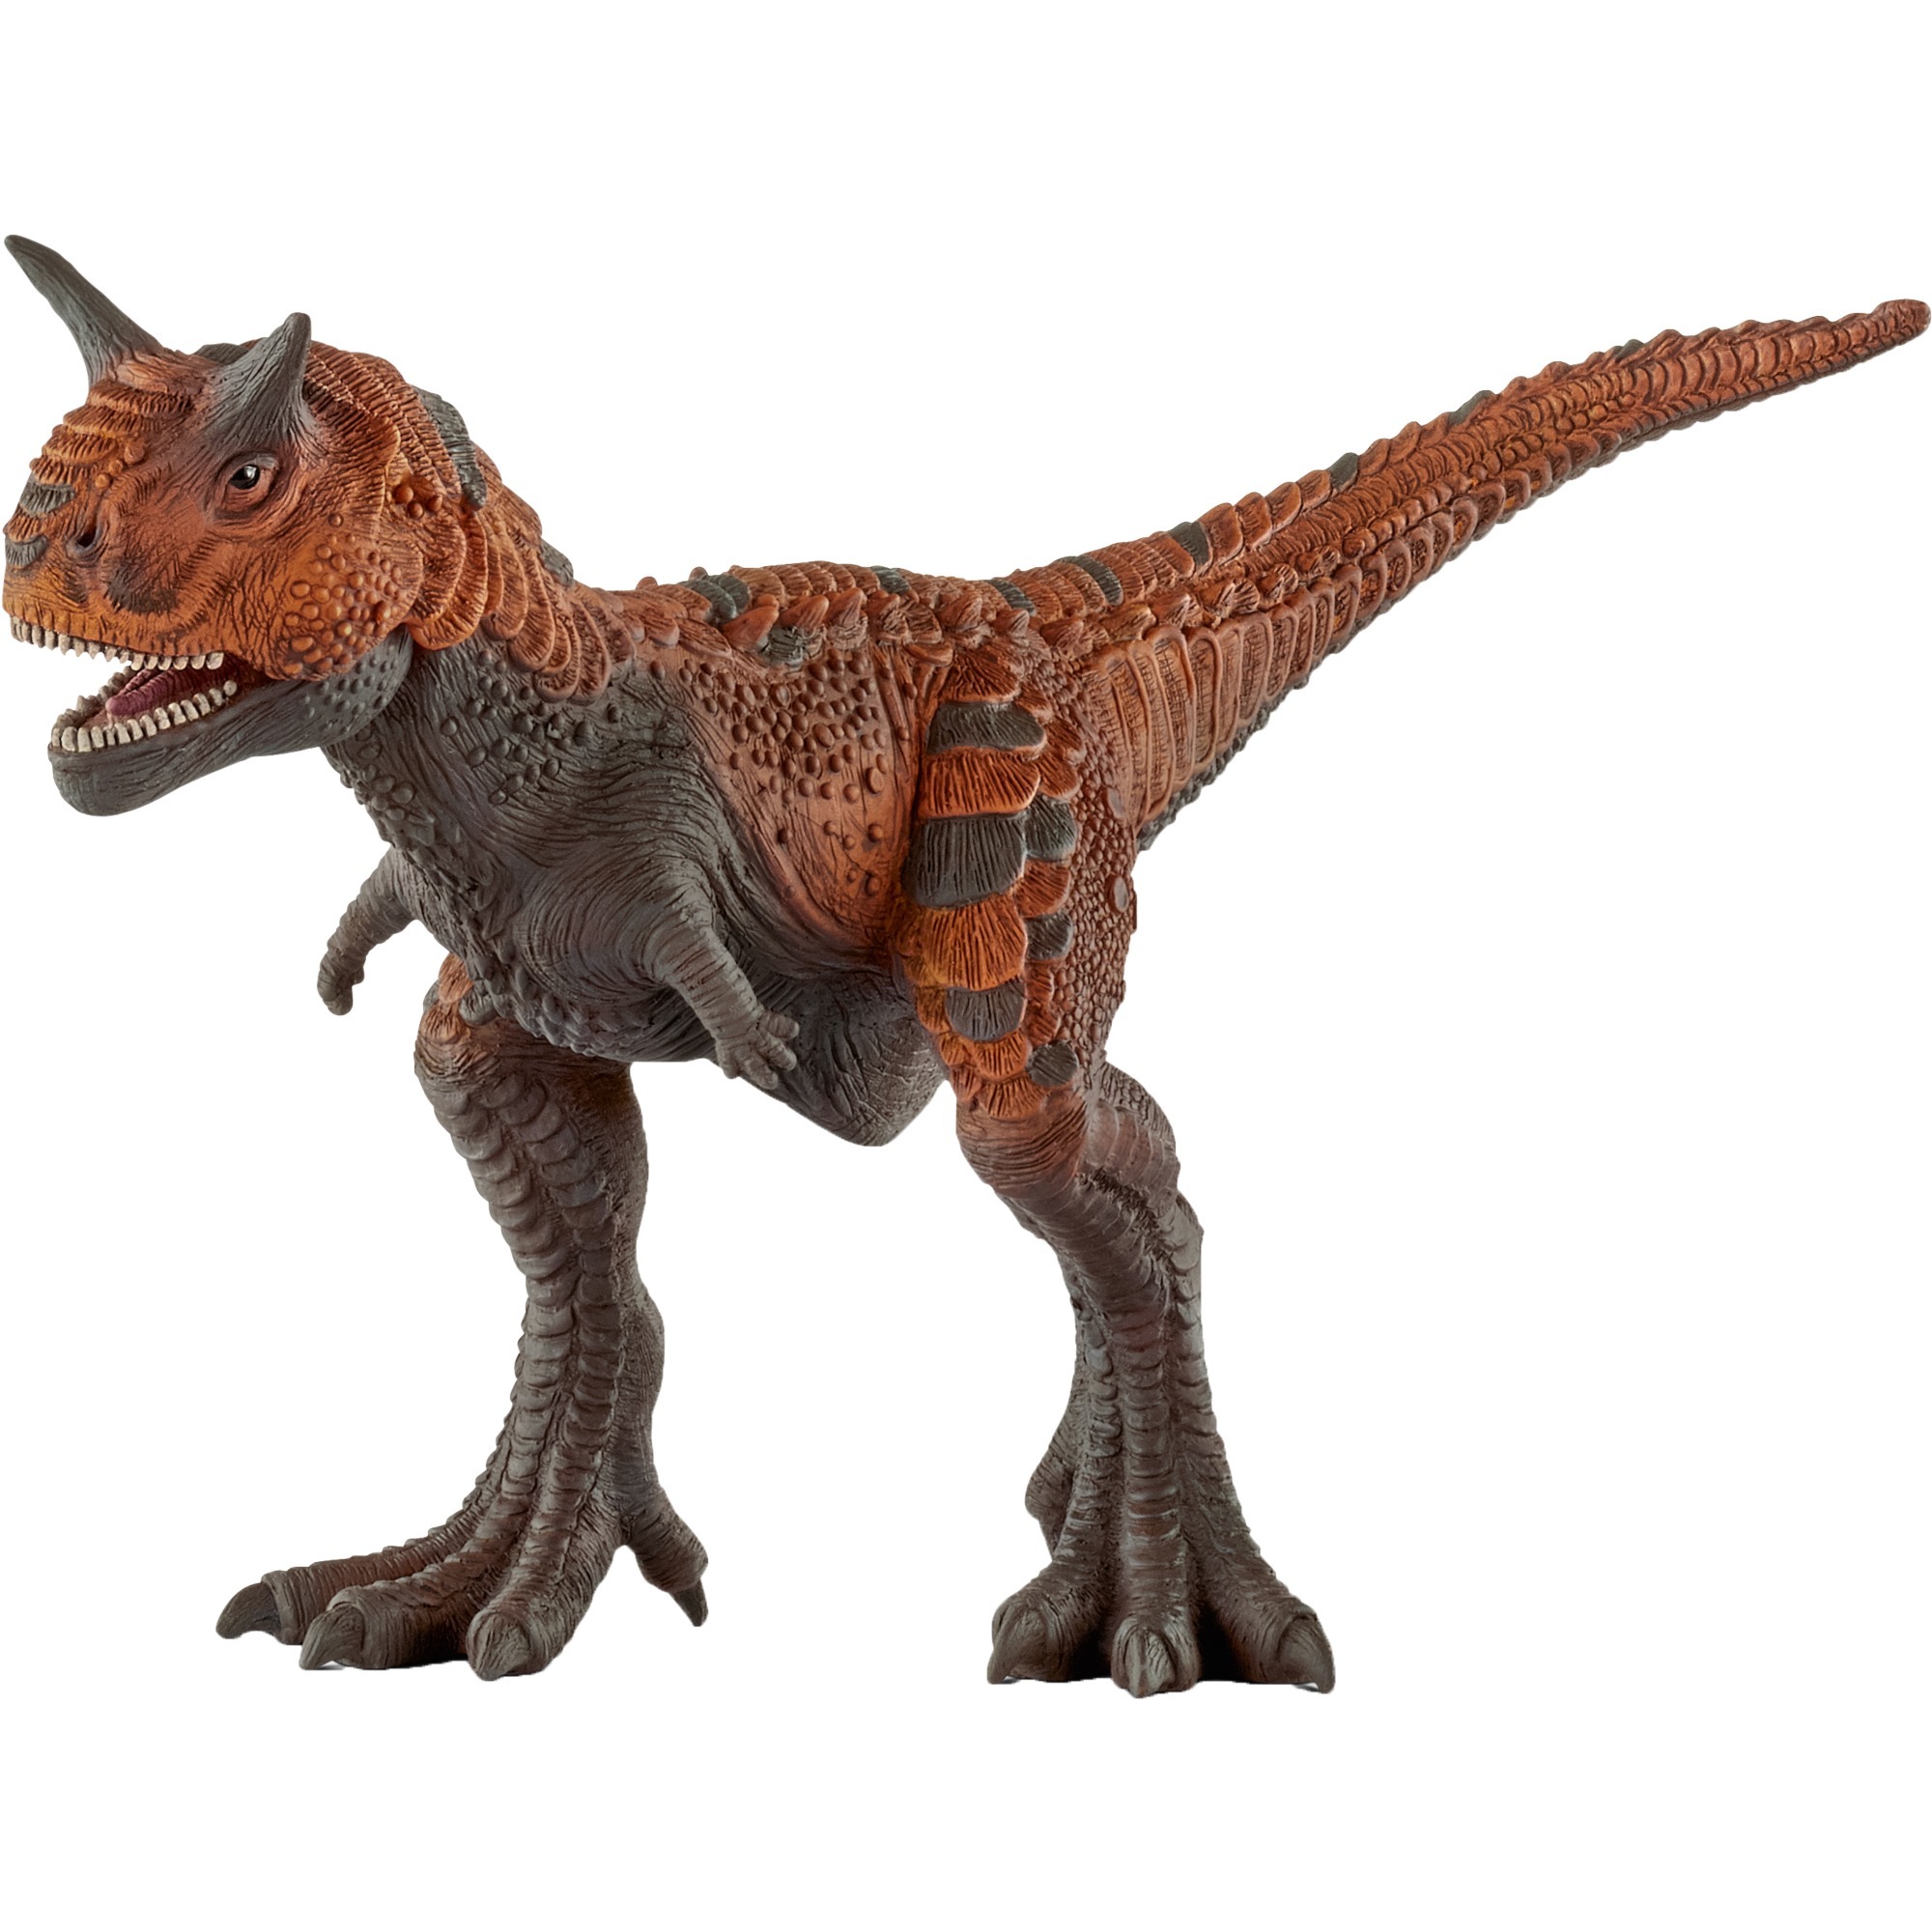 Image of Alternate - Carnotaurus, Spielfigur online einkaufen bei Alternate